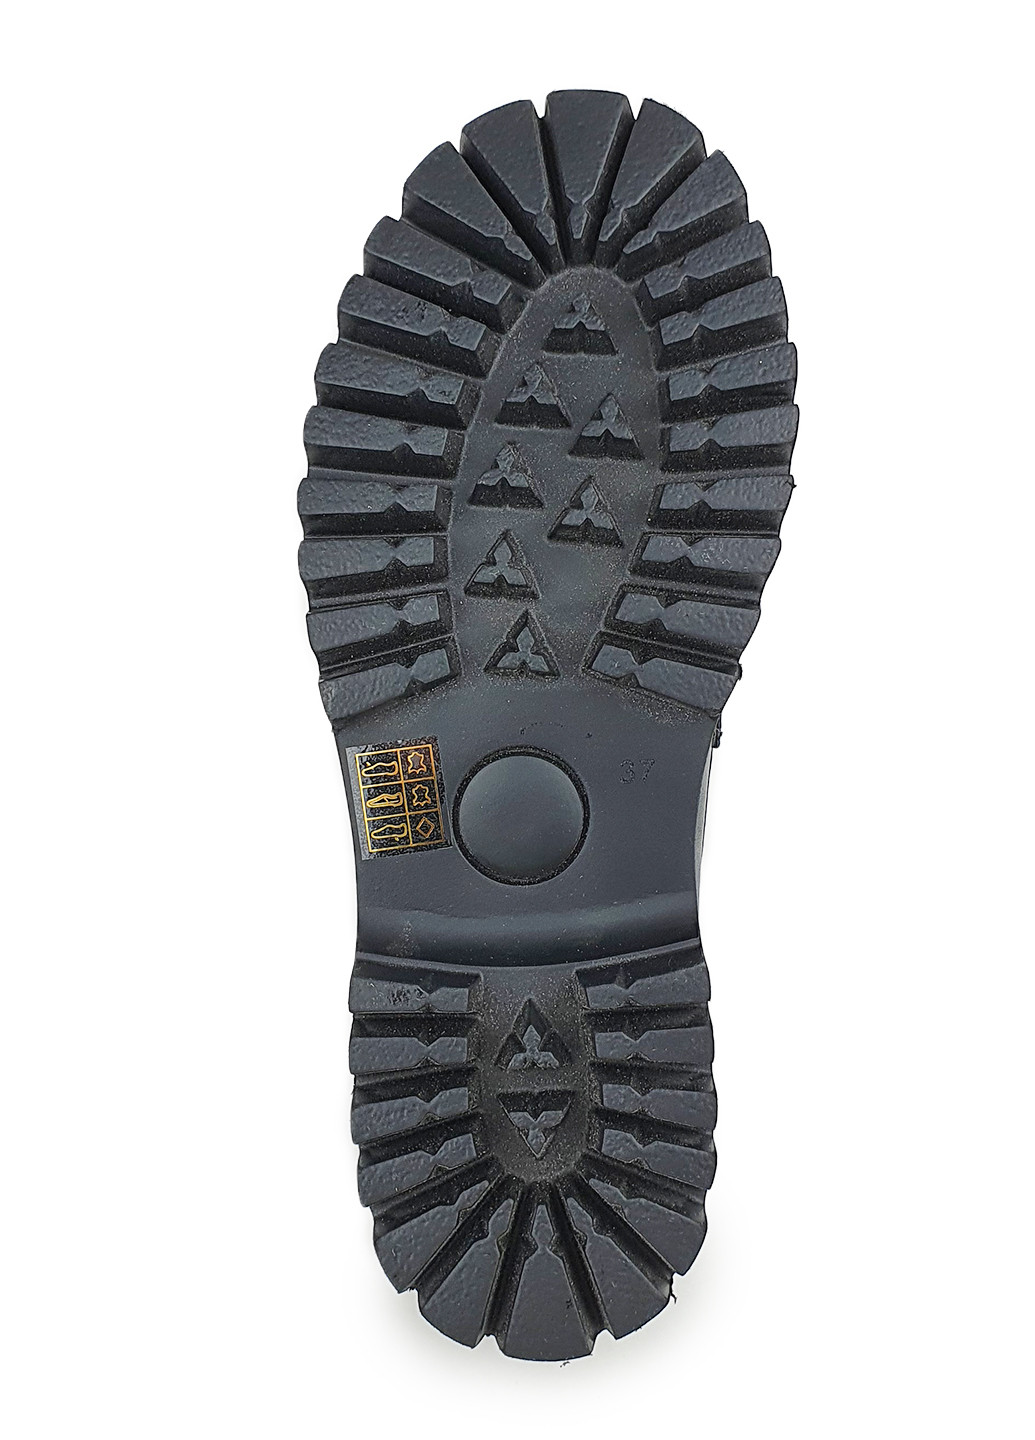 Женские туфли лоферы черного цвета на невысоком каблуке Brocoli